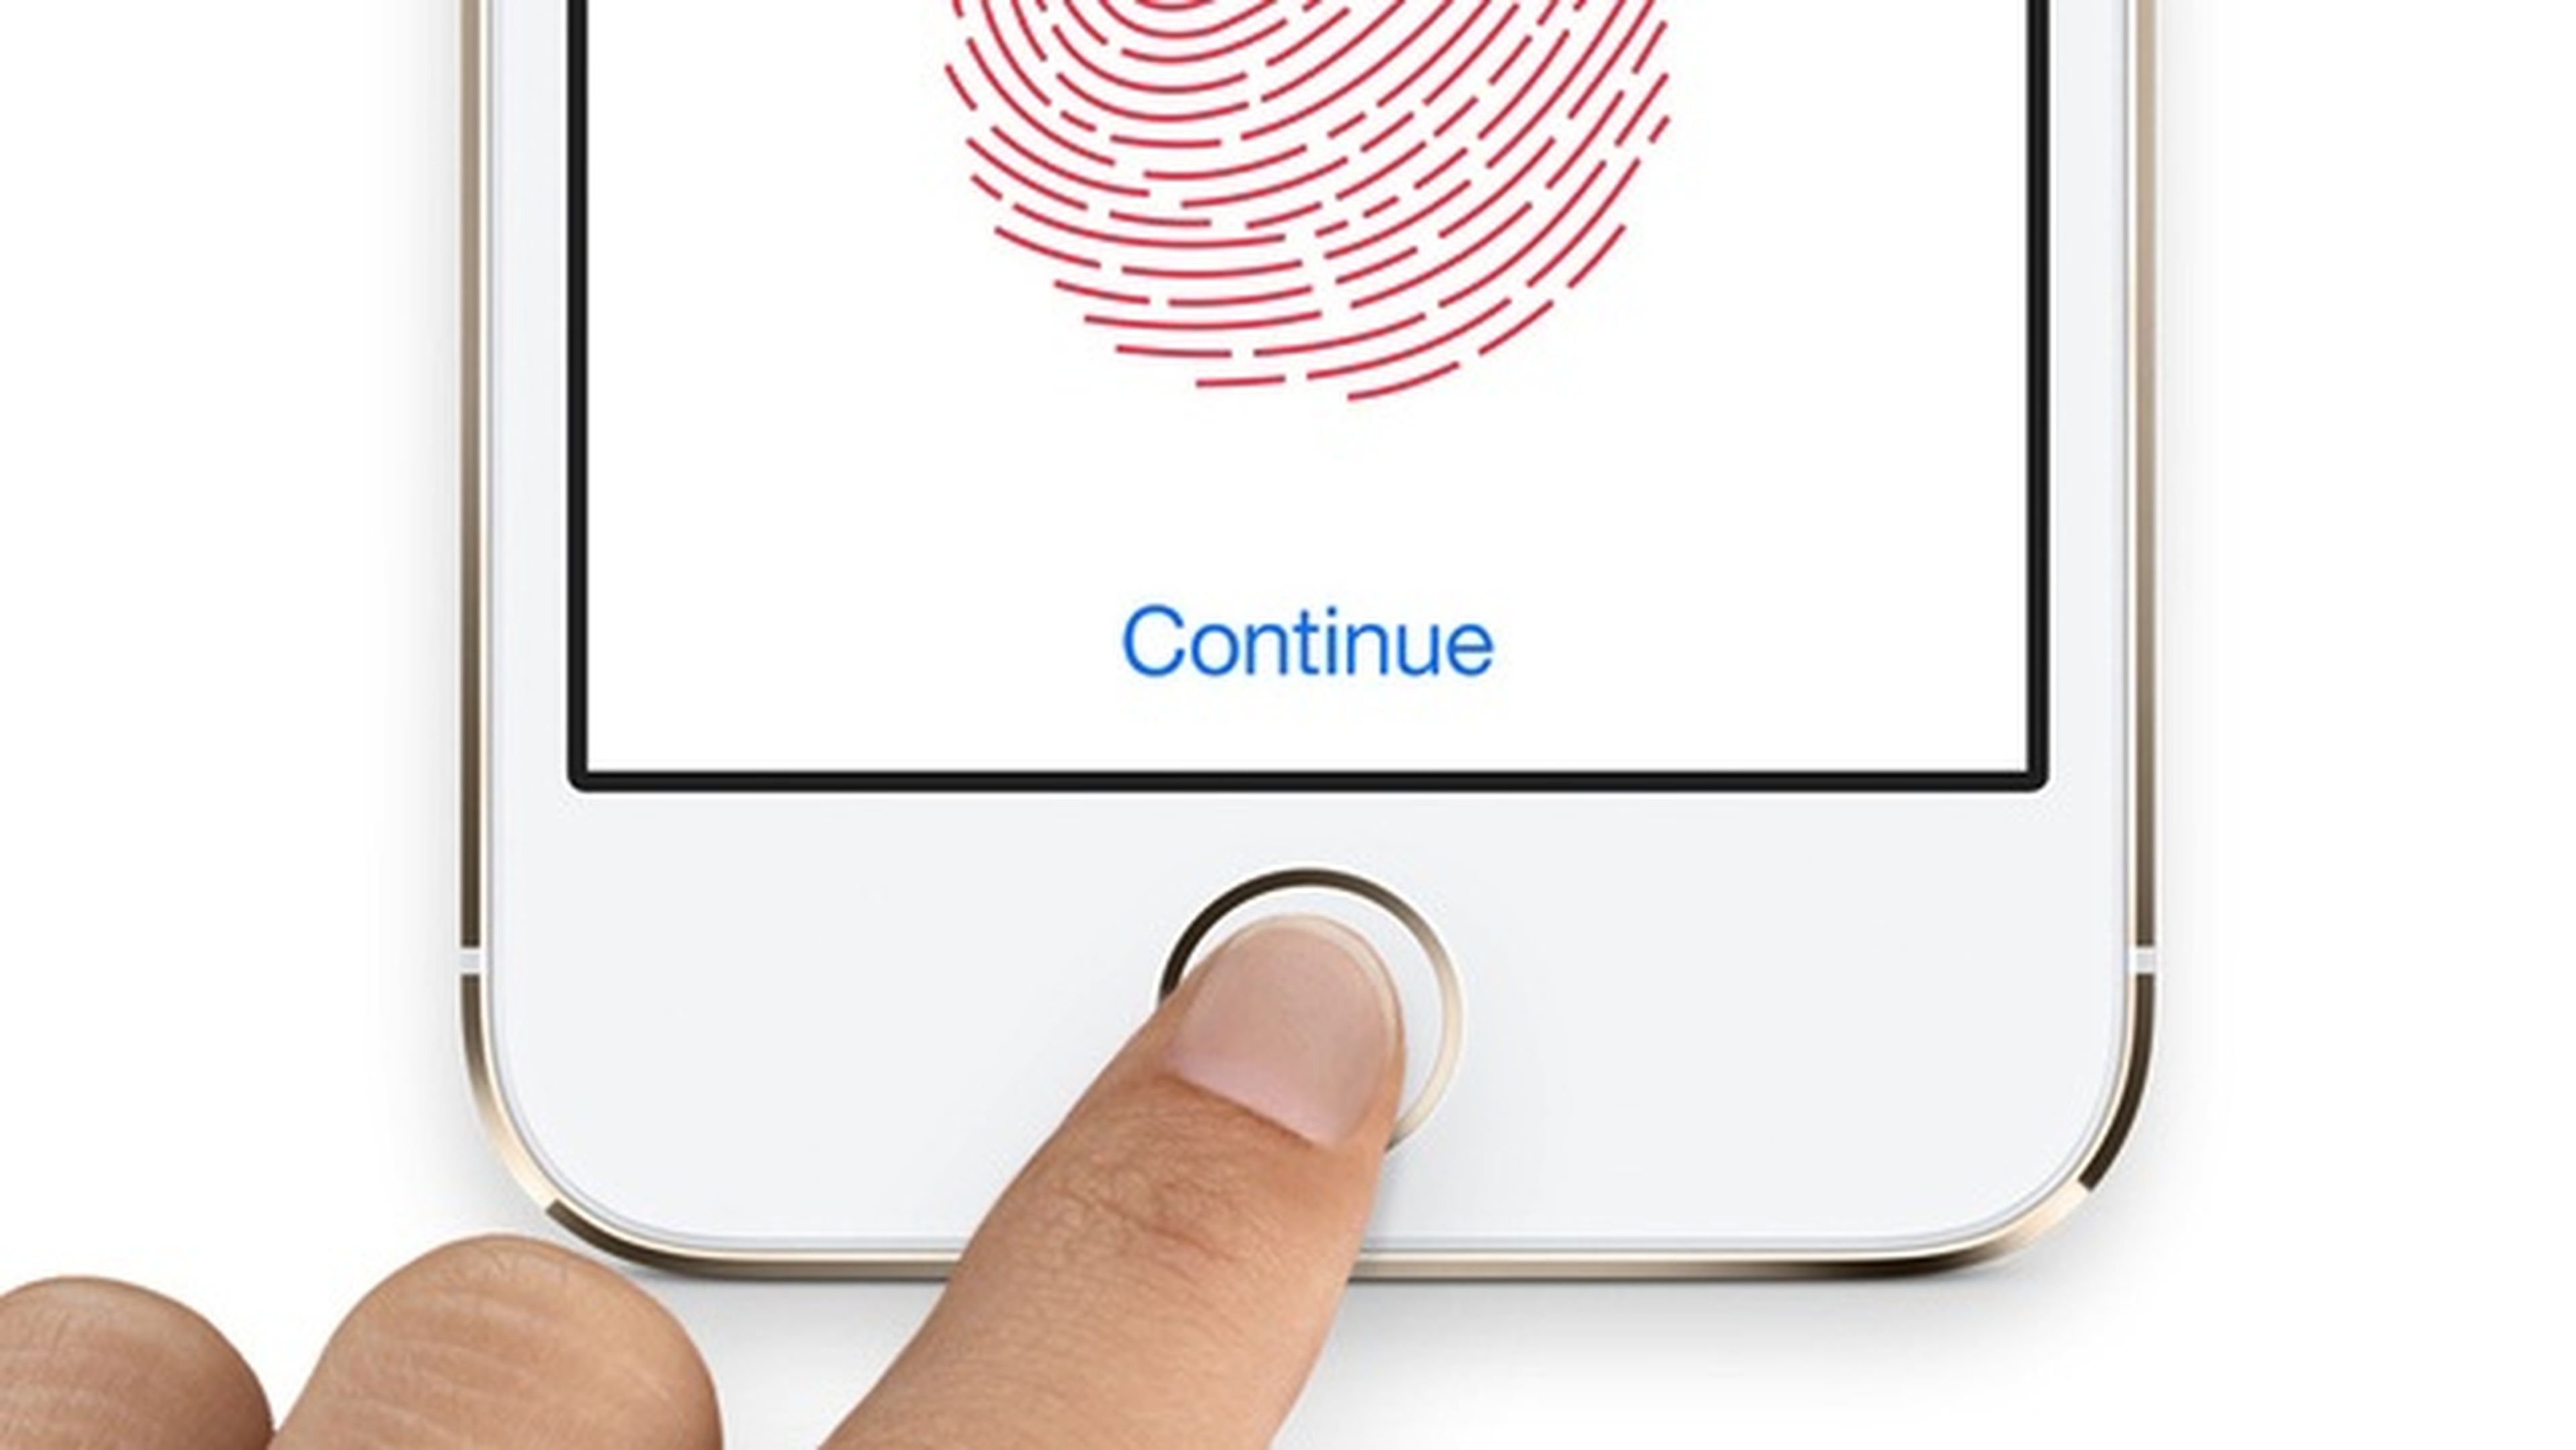 Patente de Apple refuerza el Touch ID mejora la seguridad